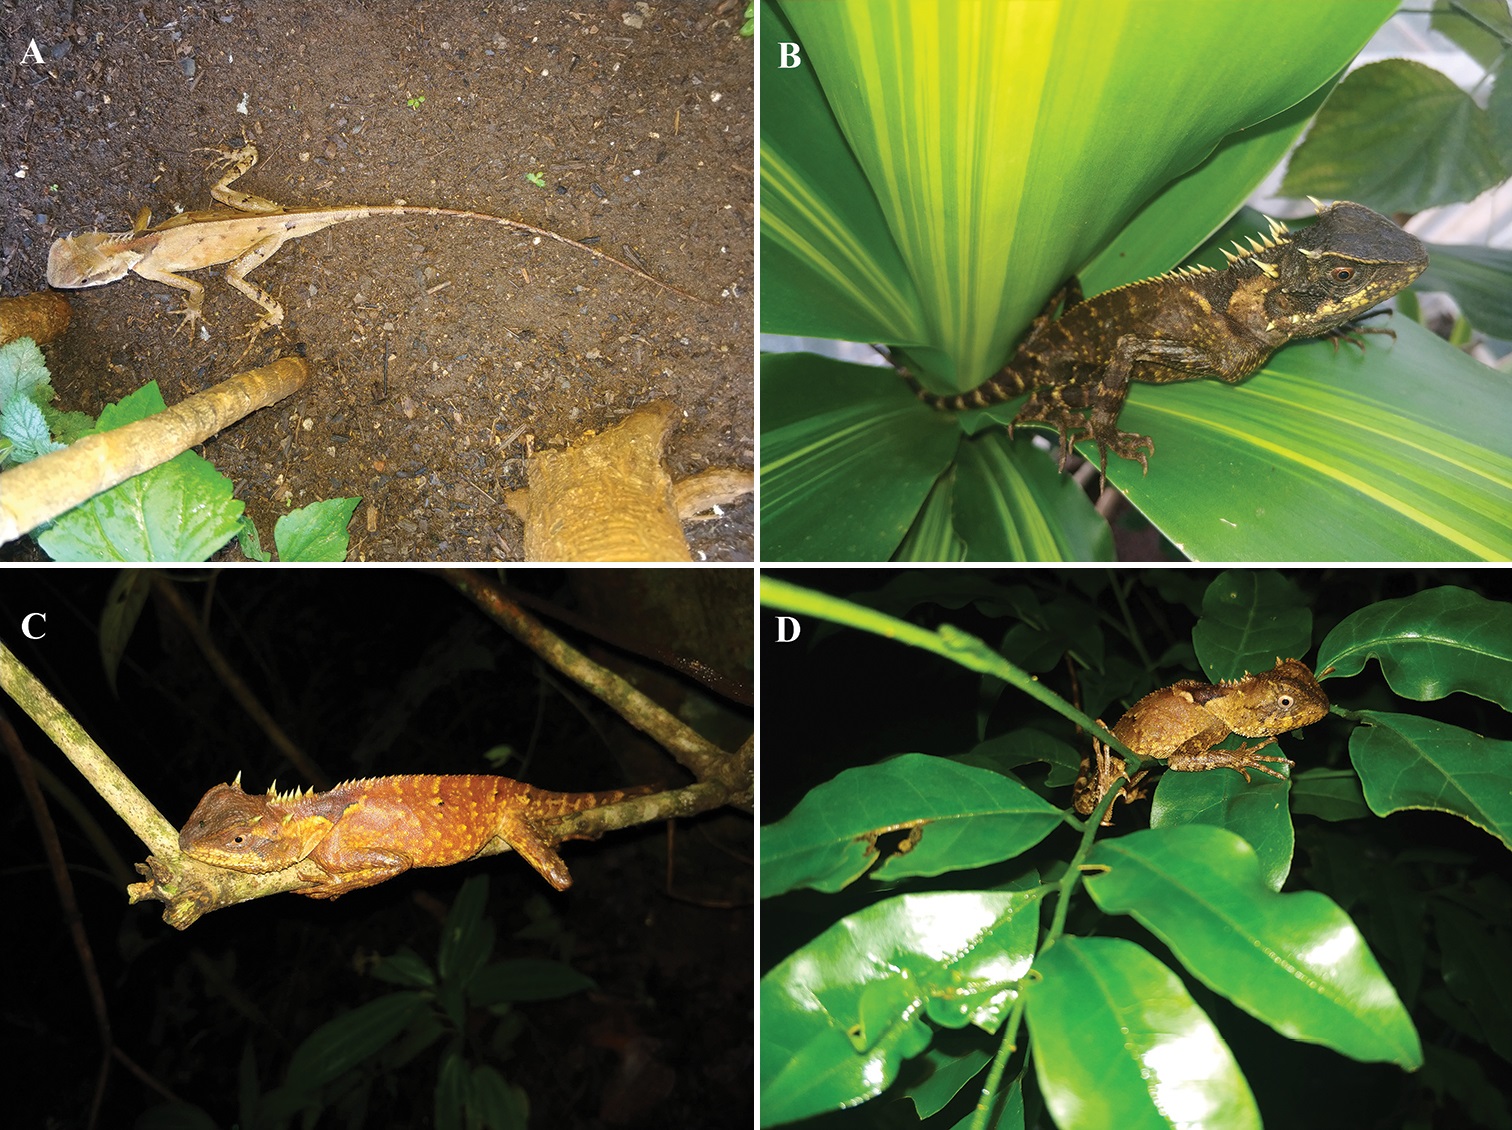 Acanthosaura tongbiguanensis: А. взрослый самец на земле; B. взрослая самка на листе; C. взрослая самка, спящая на ветке; D. ювенильная особь, спящая на ветвях и листьях.